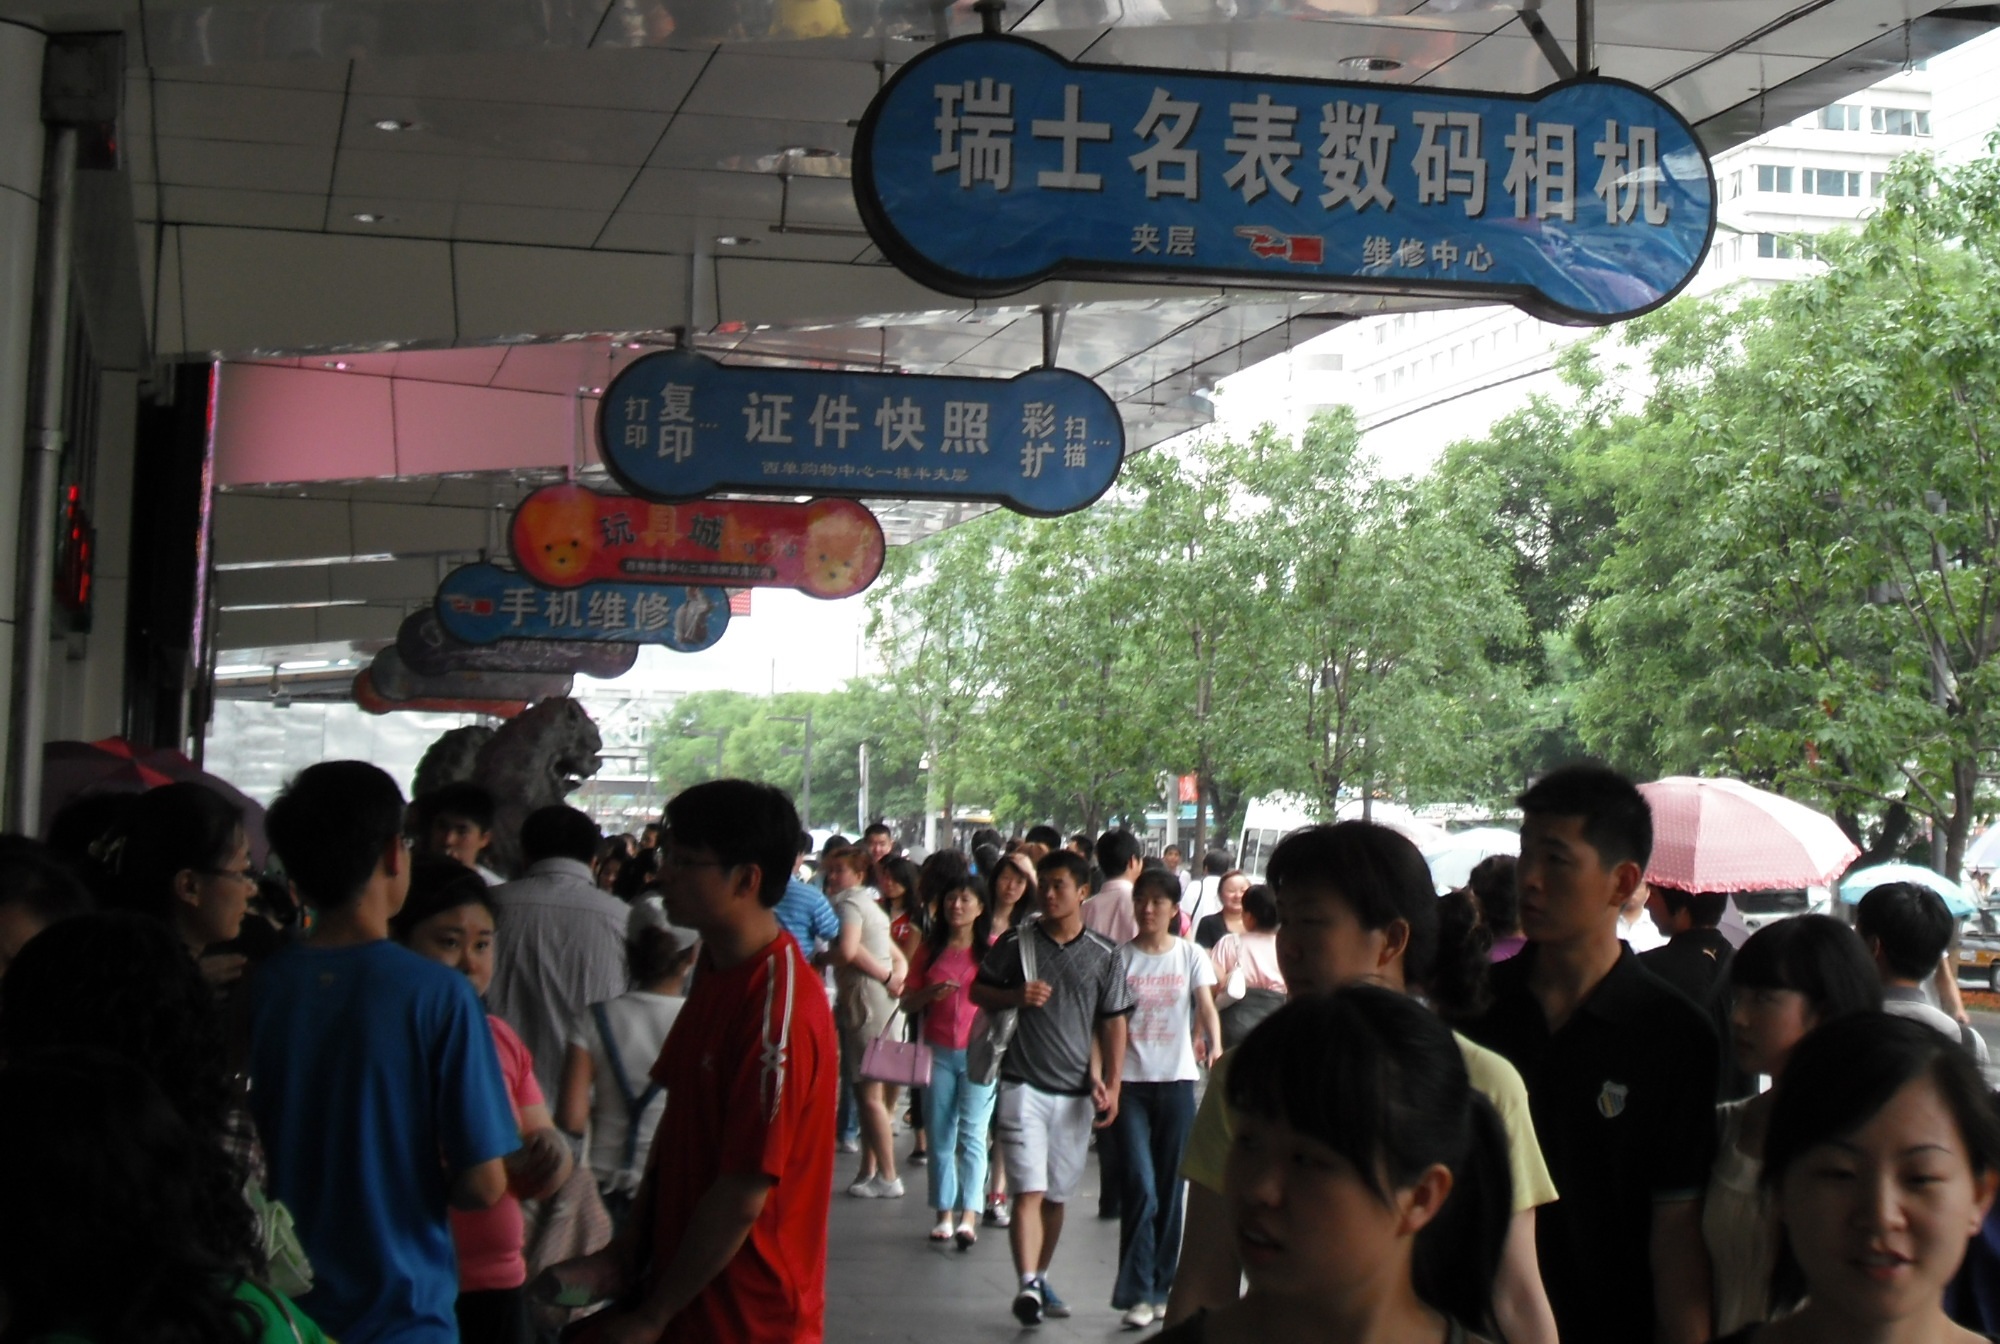 A Beijing, les cadres sont satisfaits de leur vie et emploi